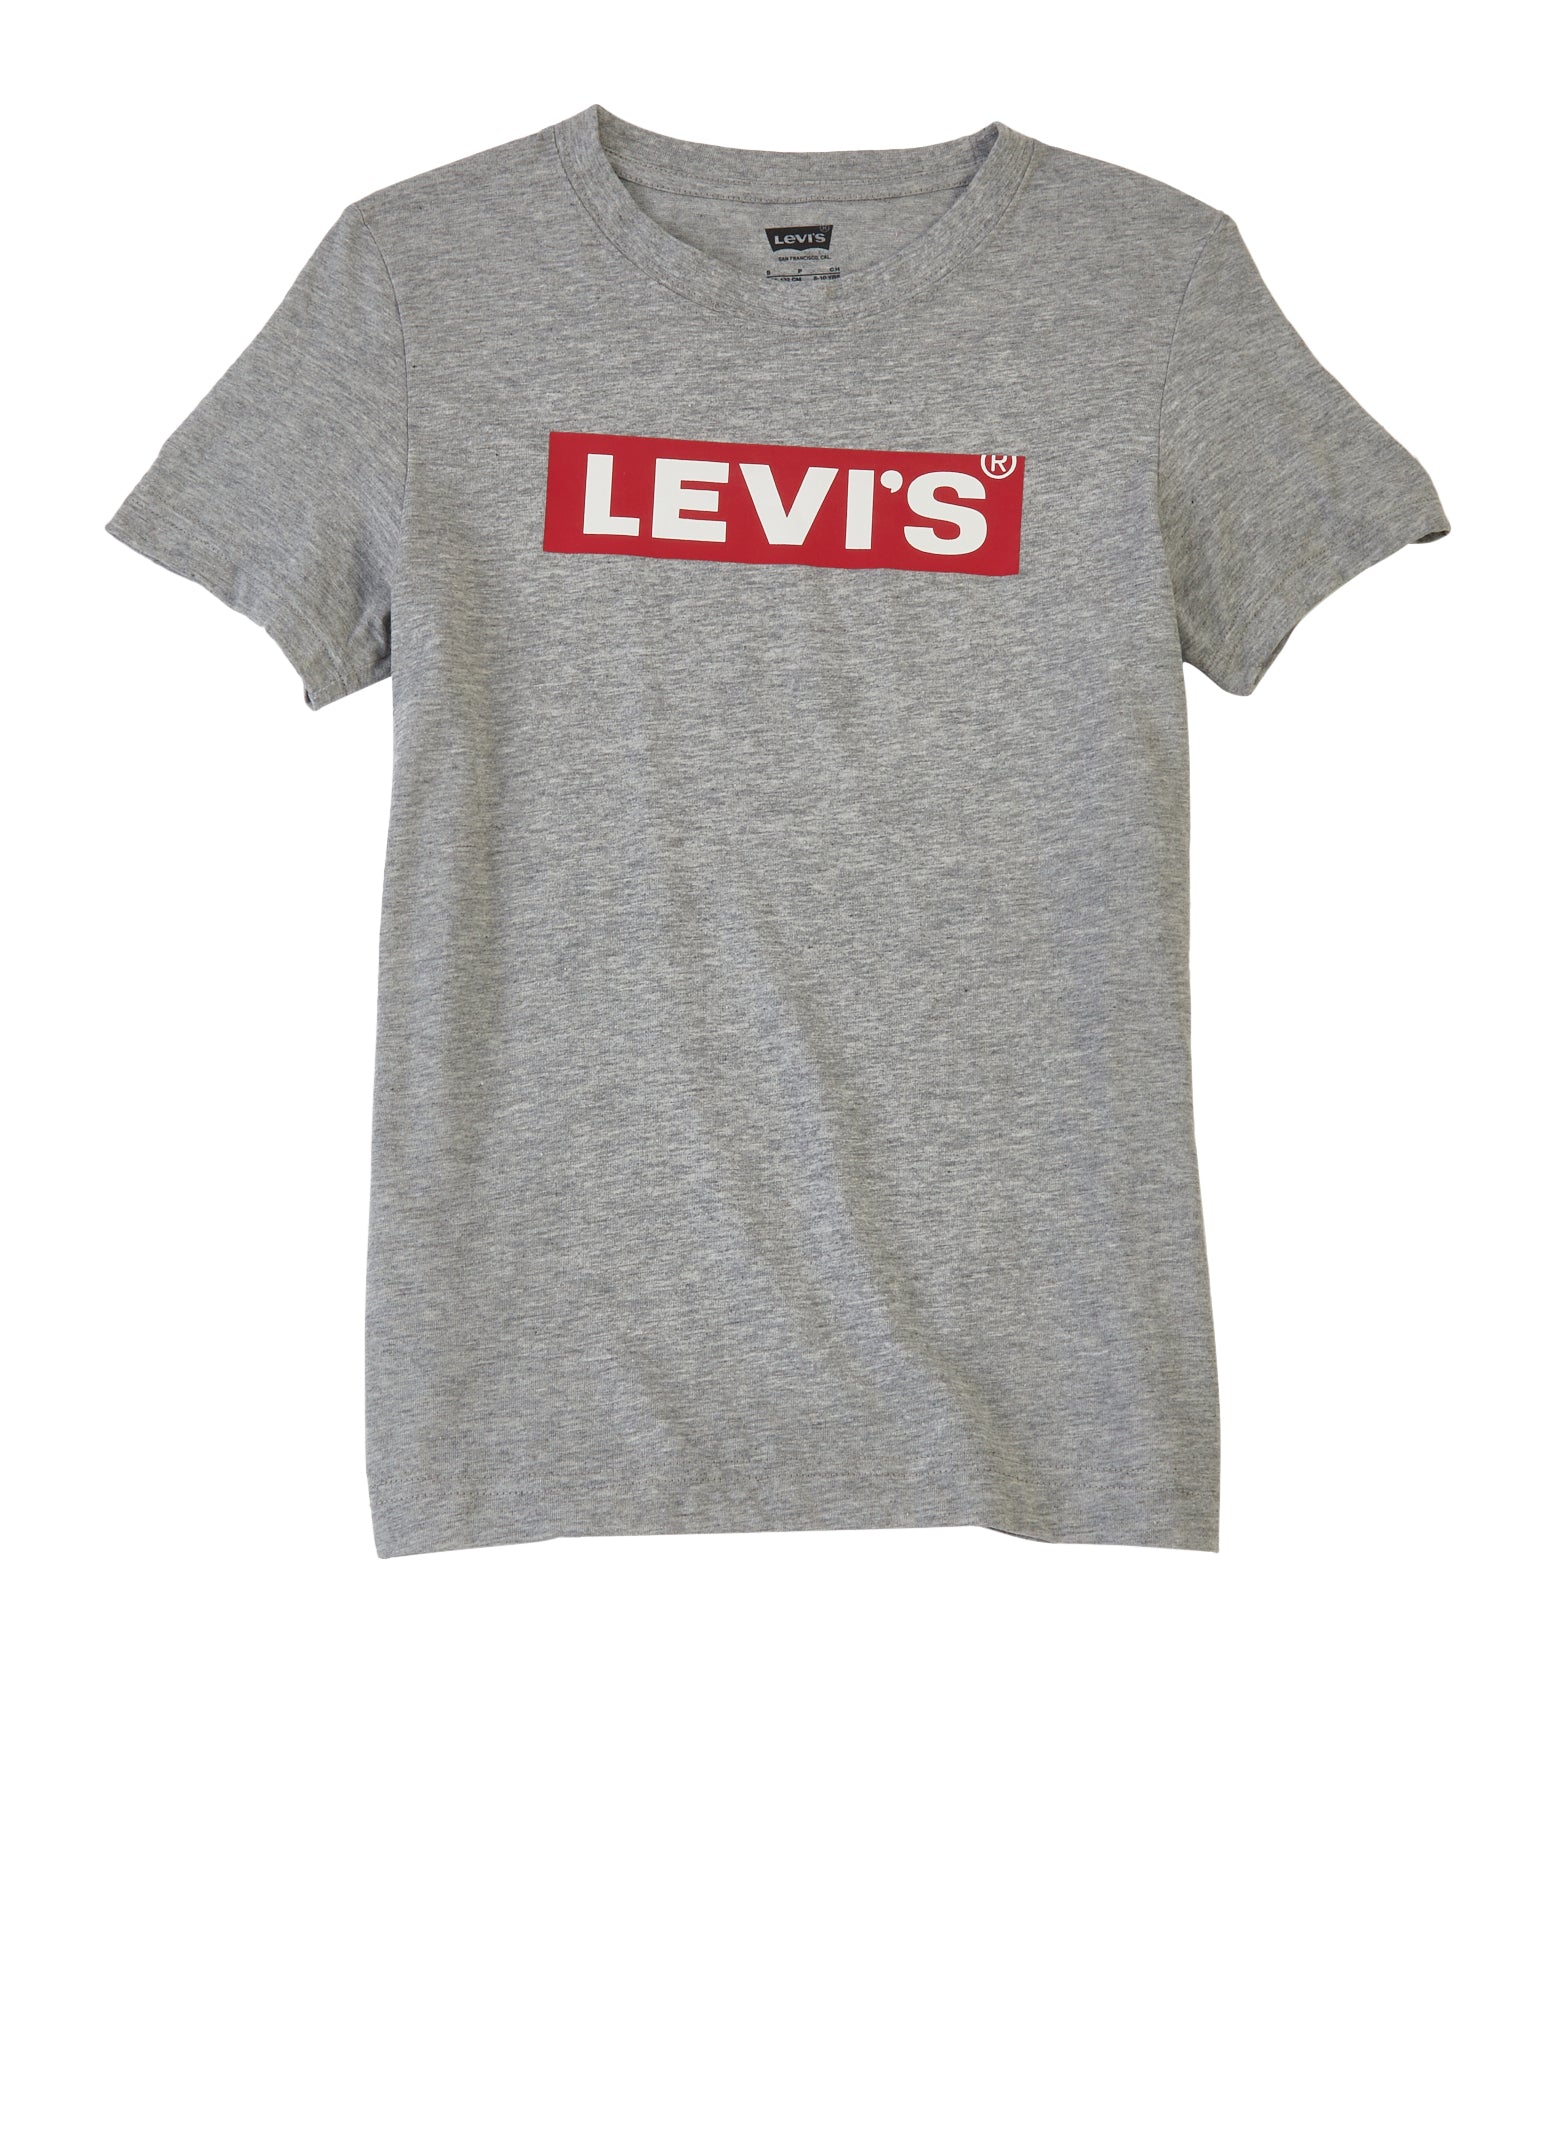 Boys Levis Short Sleeve Crew Neck T Shirt, Grey, Size M